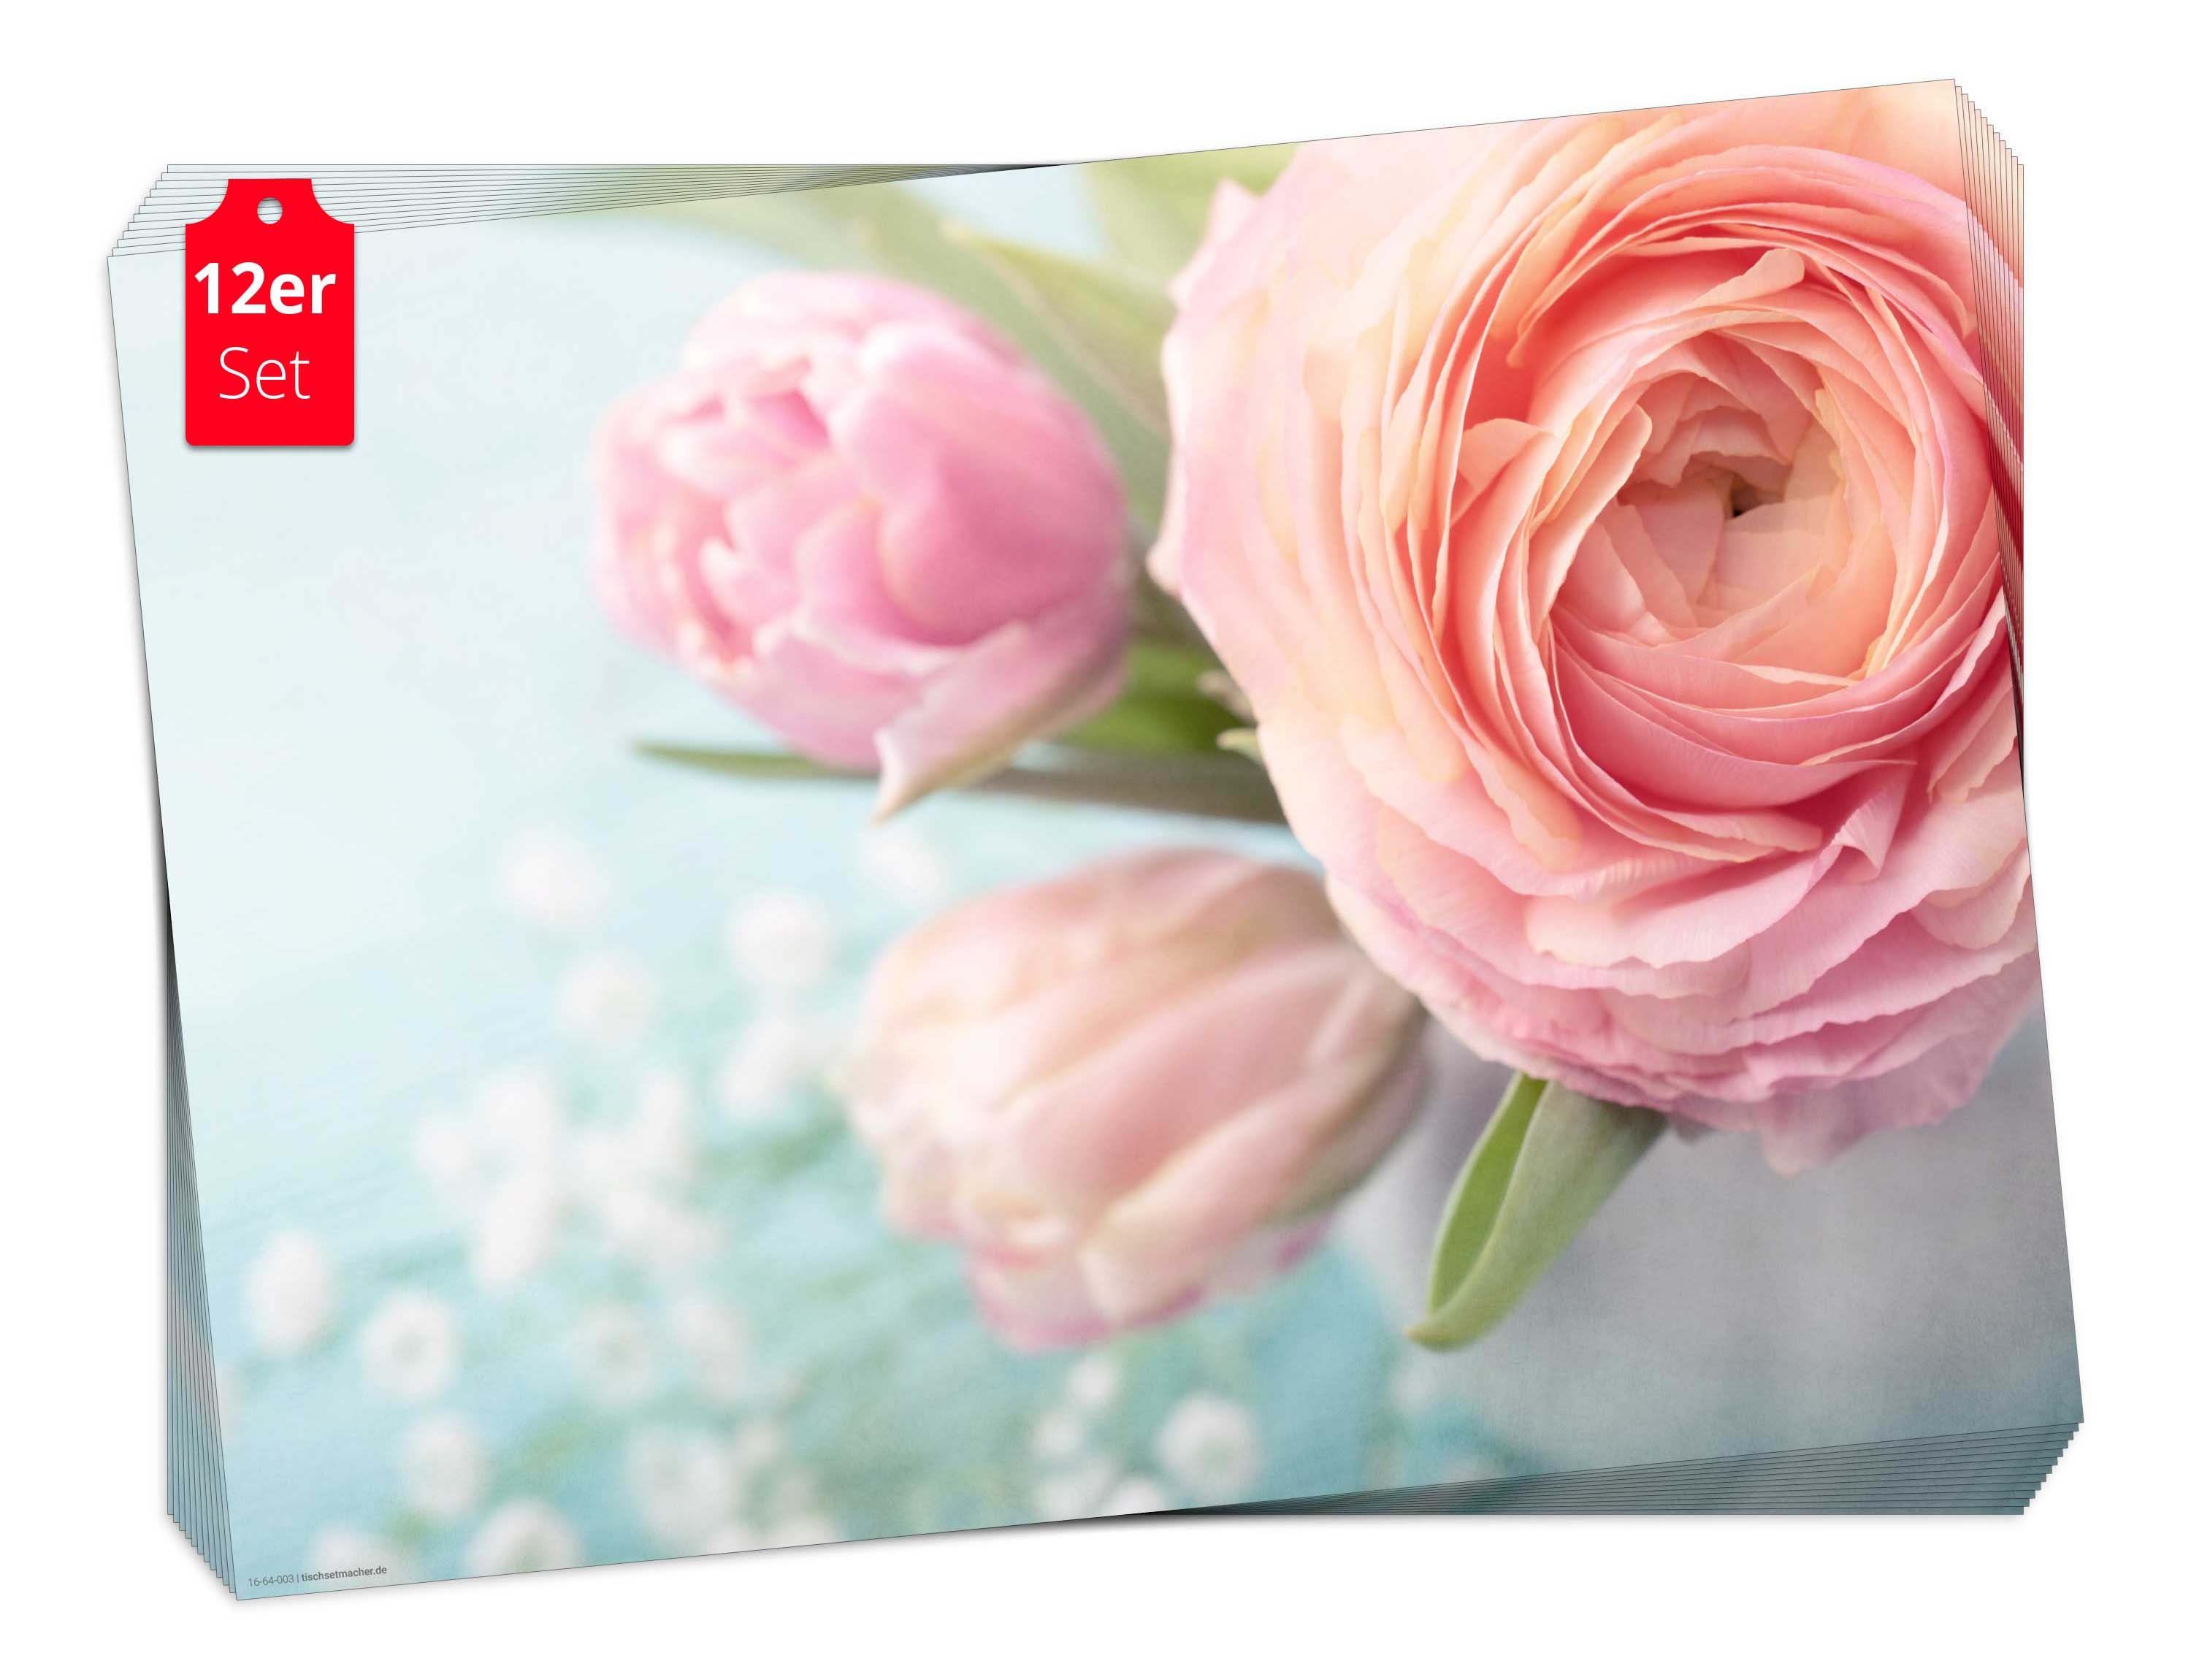 Rosa 12-St., & x cm Ostern Naturpapier in 44 Germany Aufbewahrungsmappe, Made Tischsetmacher, Tischset rosa), 32 in - Blumen / (aus Frühling, Platzset, Rosen,